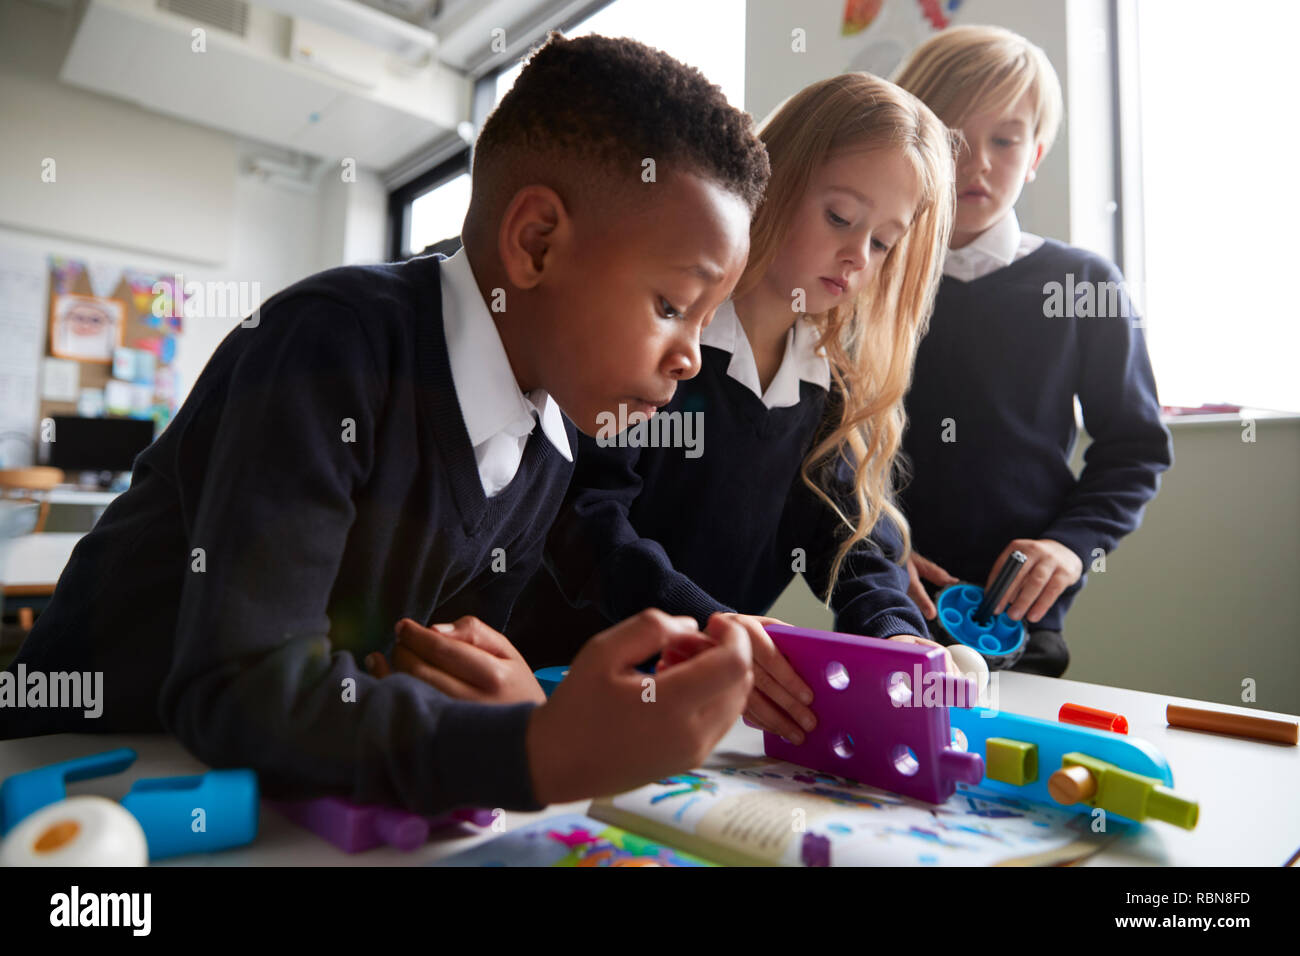 Près de trois enfants de l'école primaire travaillant ensemble avec les blocs de construction de jouets dans une salle de classe, low angle view Banque D'Images